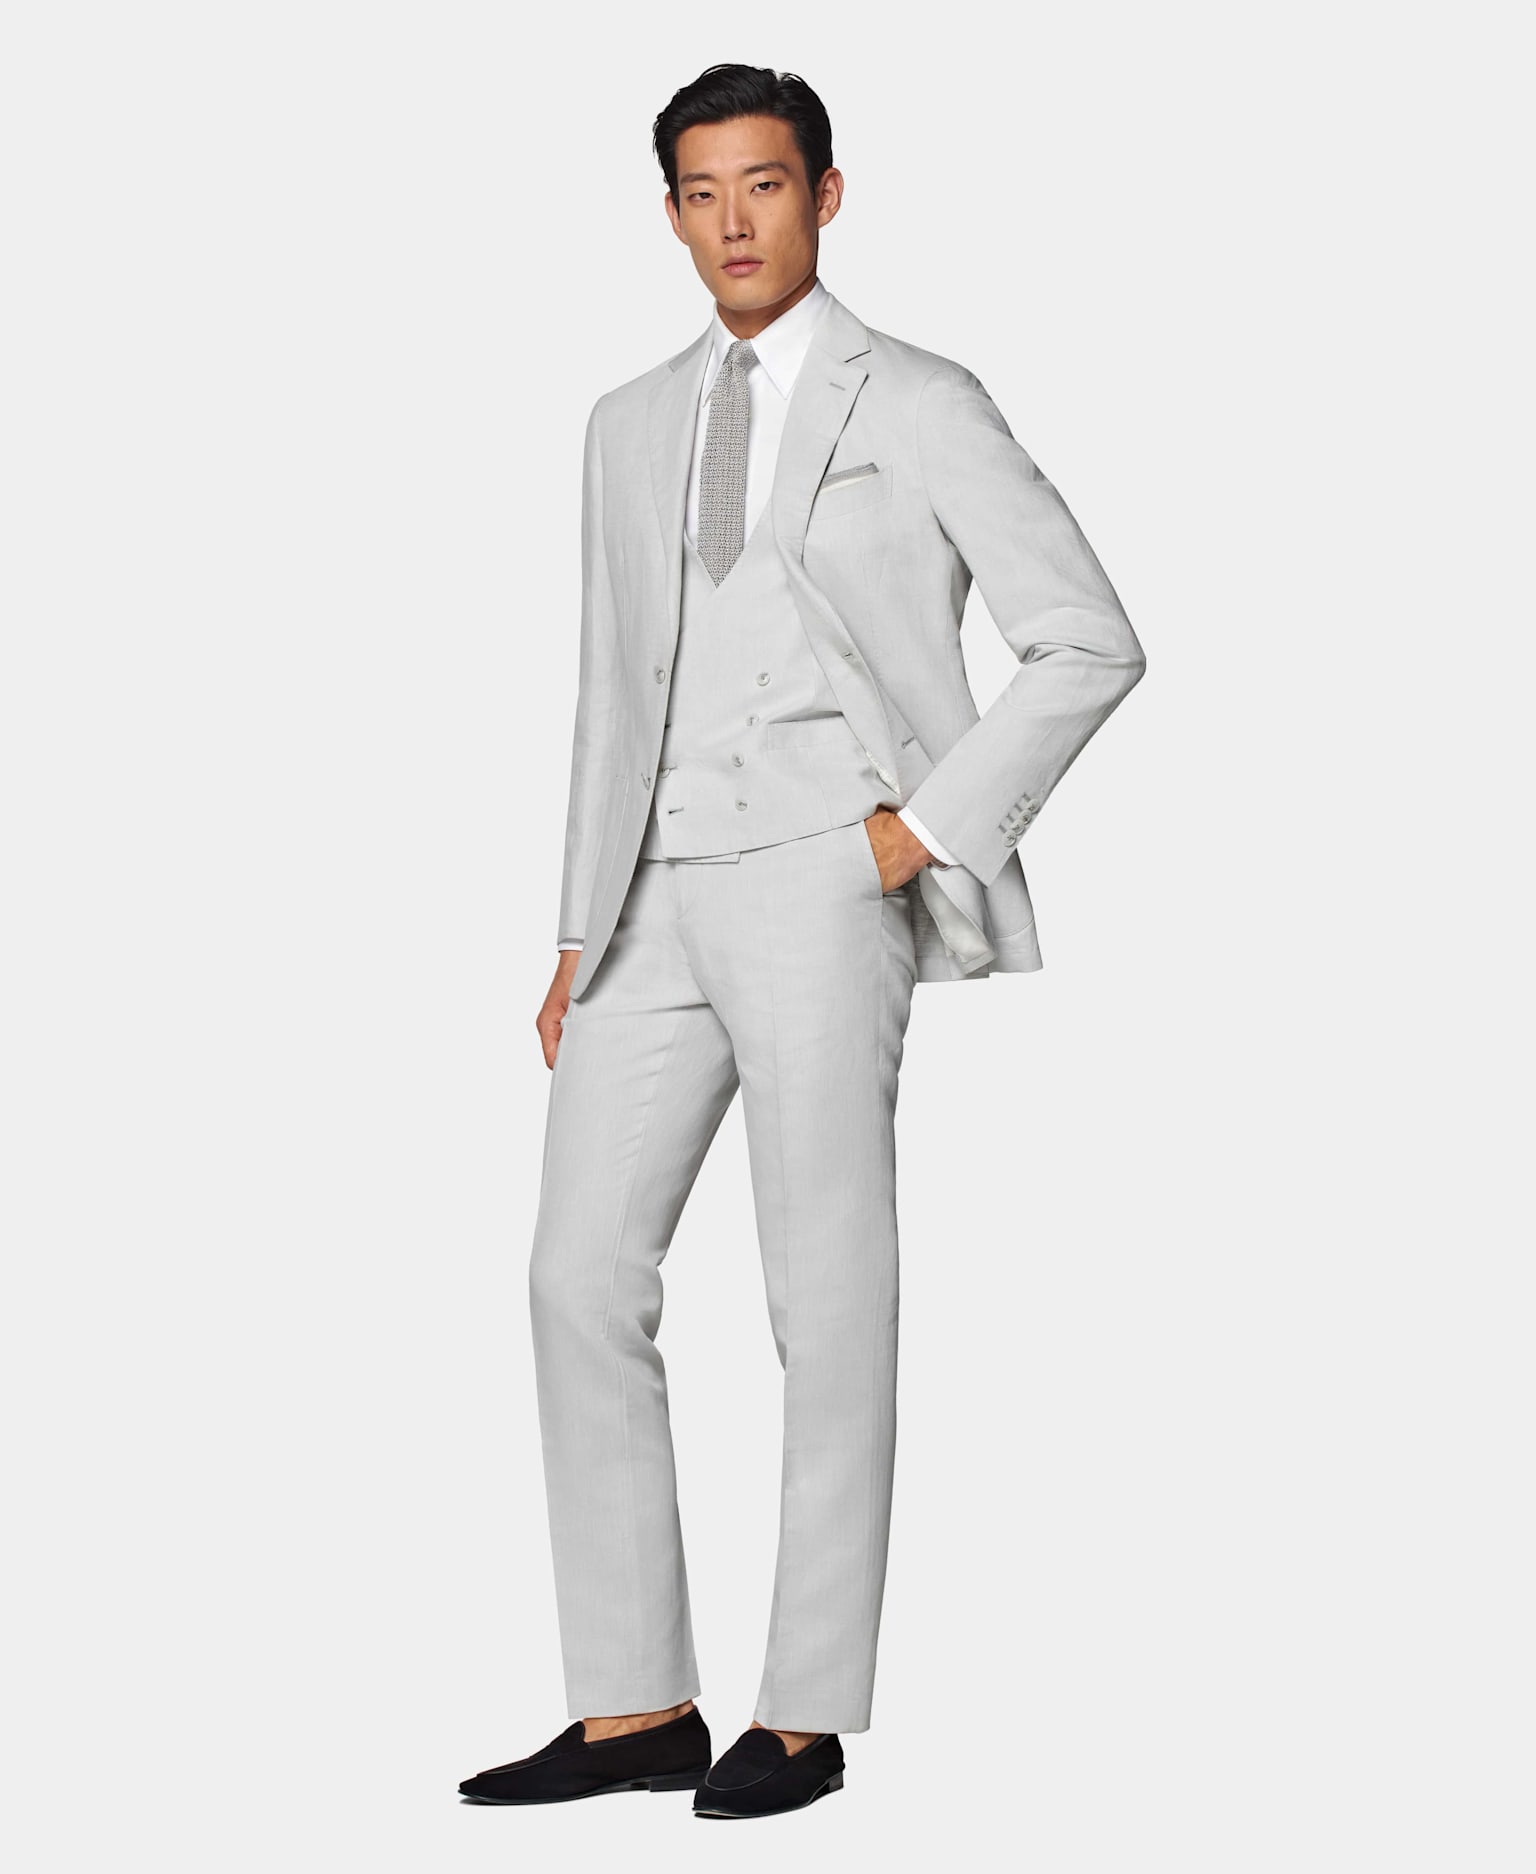 Un traje gris claro de 3 piezas con camisa blanca y pajarita de punto gris de seda.